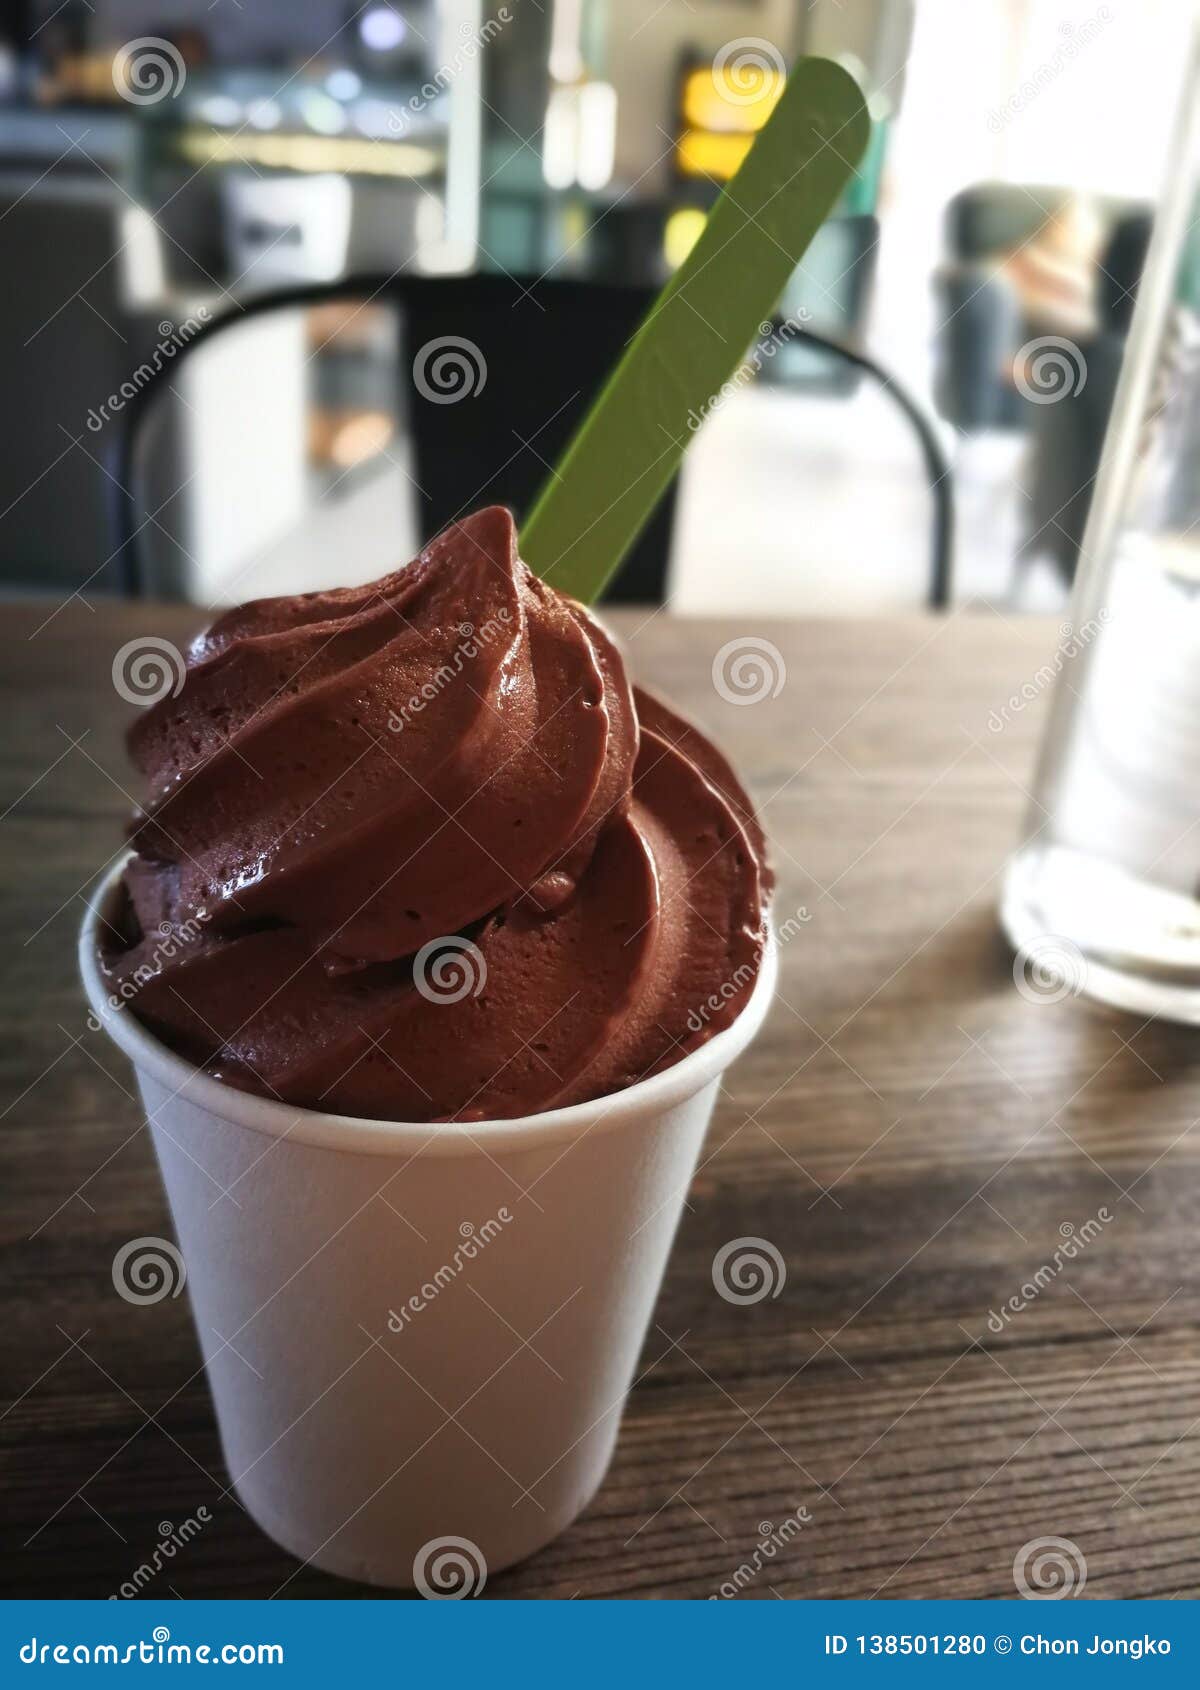 Ice Cream Break